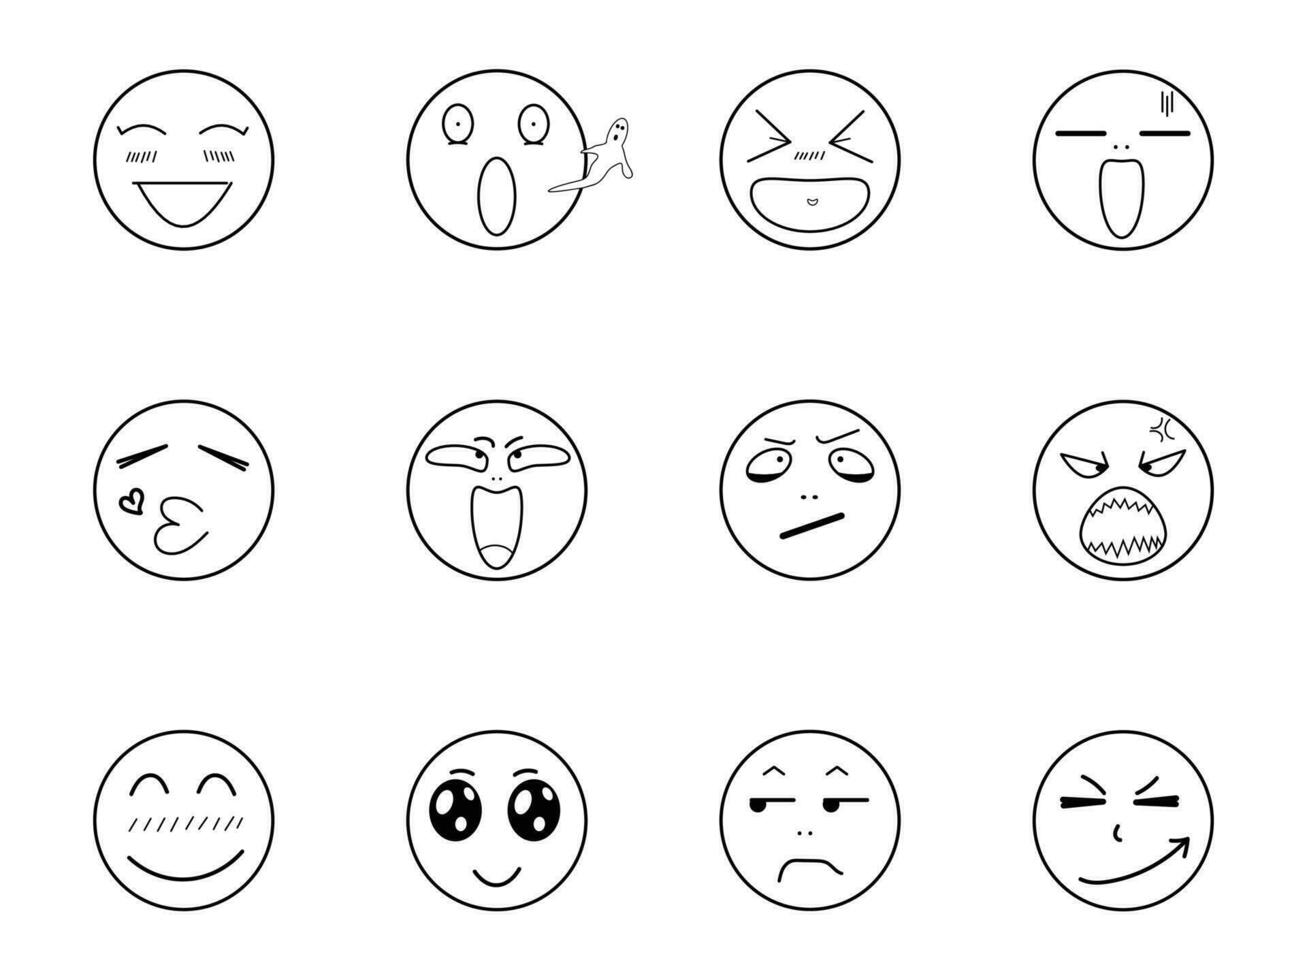 círculo do emojis mostrando diferente vetor de emoções ilustração